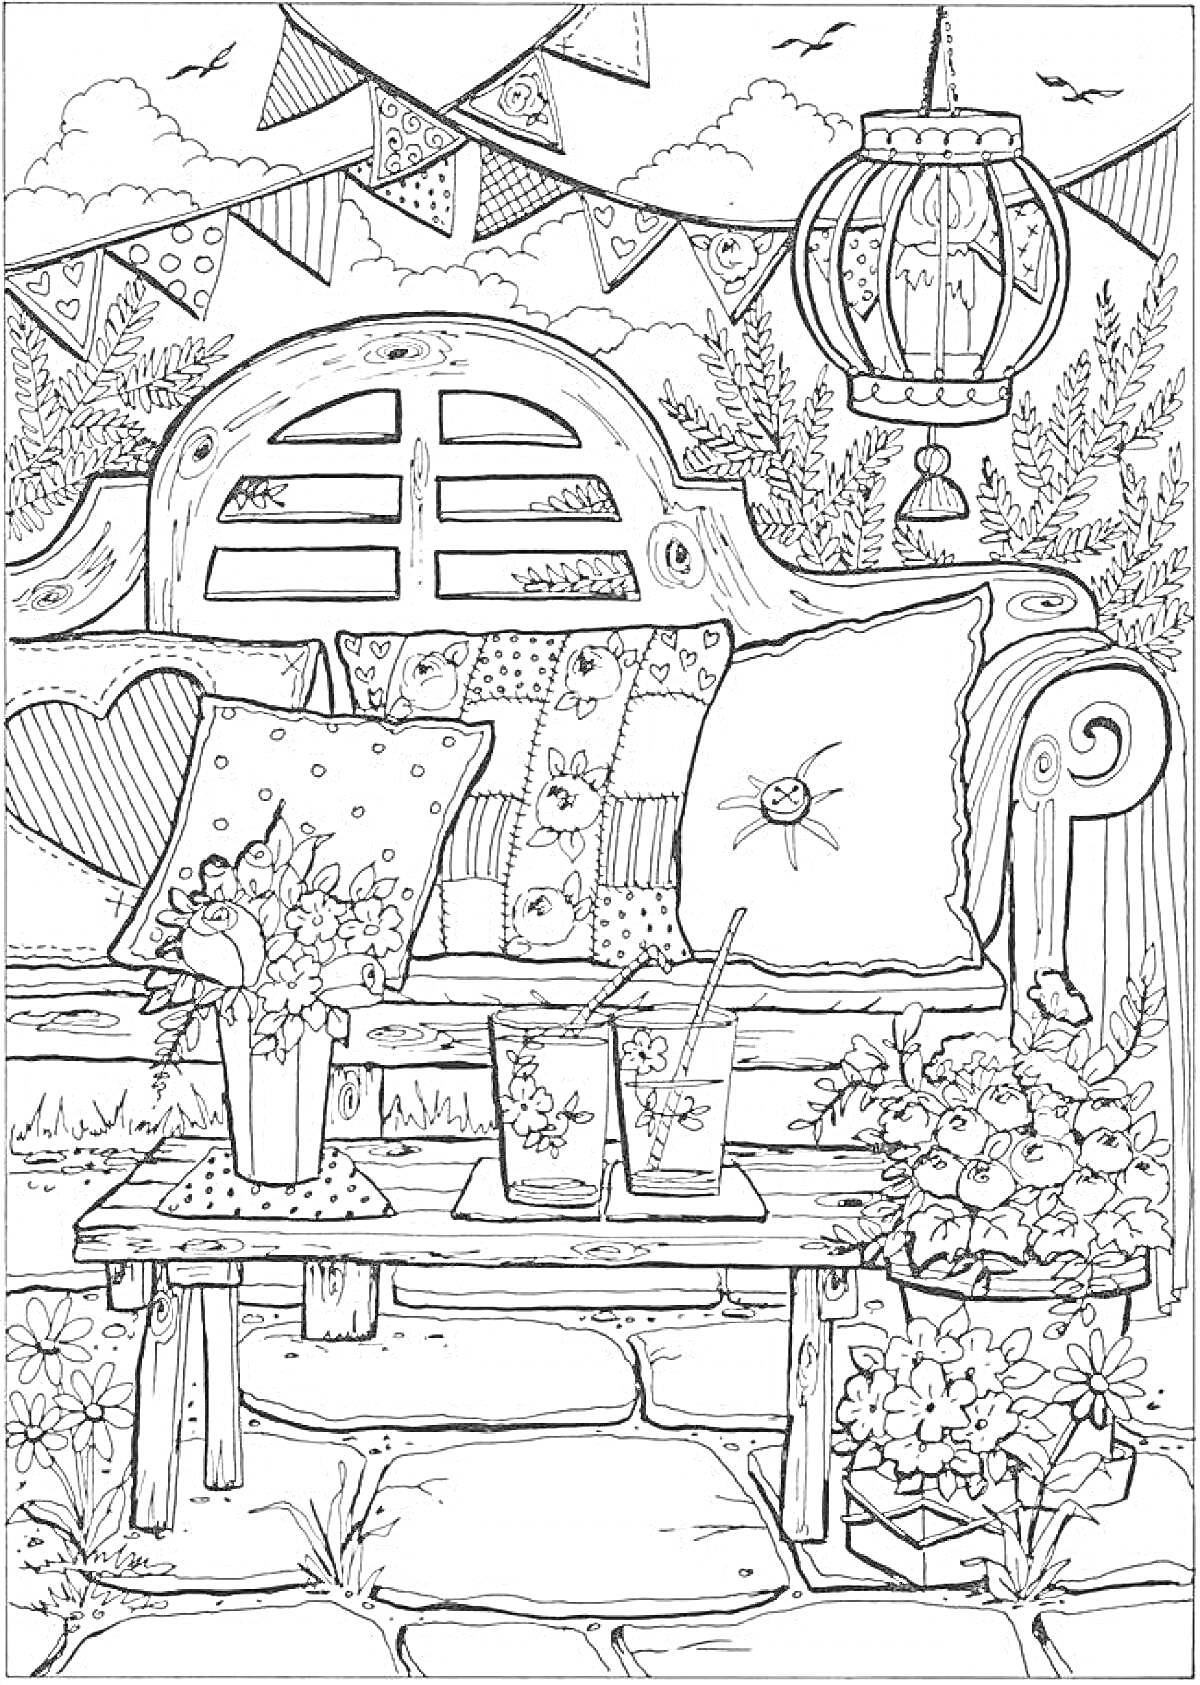 Раскраска Лавочка с декоративными подушками, стол с напитками и цветами, цветы в горшках, подвесной фонарь, флажки, облака и птицы на фоне